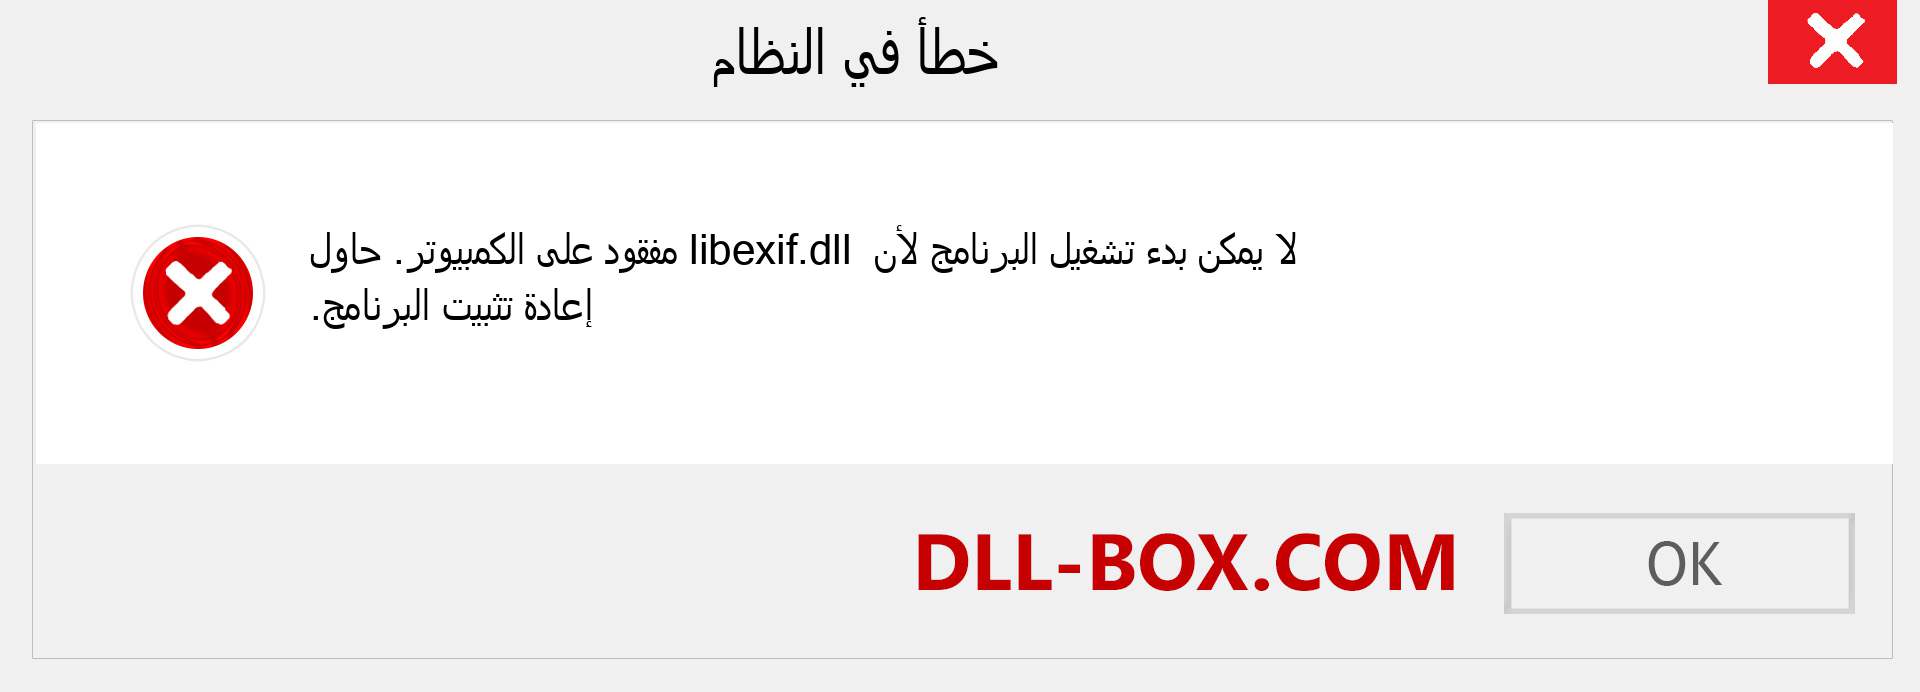 ملف libexif.dll مفقود ؟. التنزيل لنظام التشغيل Windows 7 و 8 و 10 - إصلاح خطأ libexif dll المفقود على Windows والصور والصور